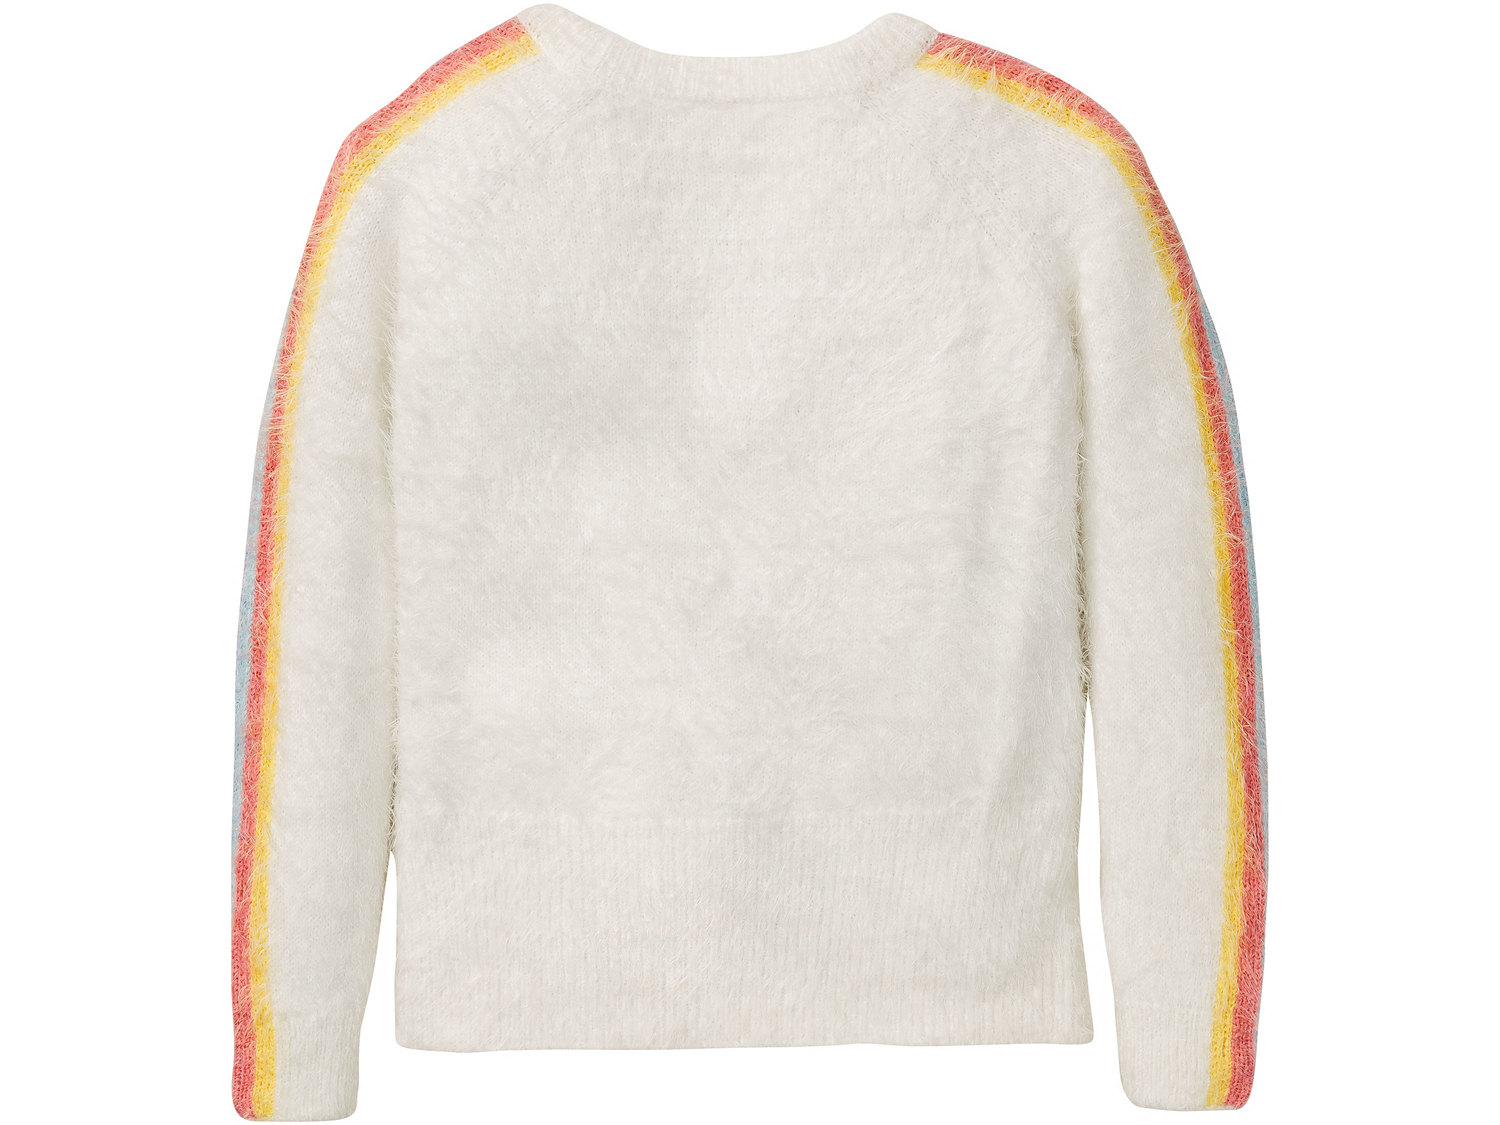 Sweter dziewczęcy Pepperts, cena 34,99 PLN 
- rozmiary: 122-164
- przyjemny, miękki ...